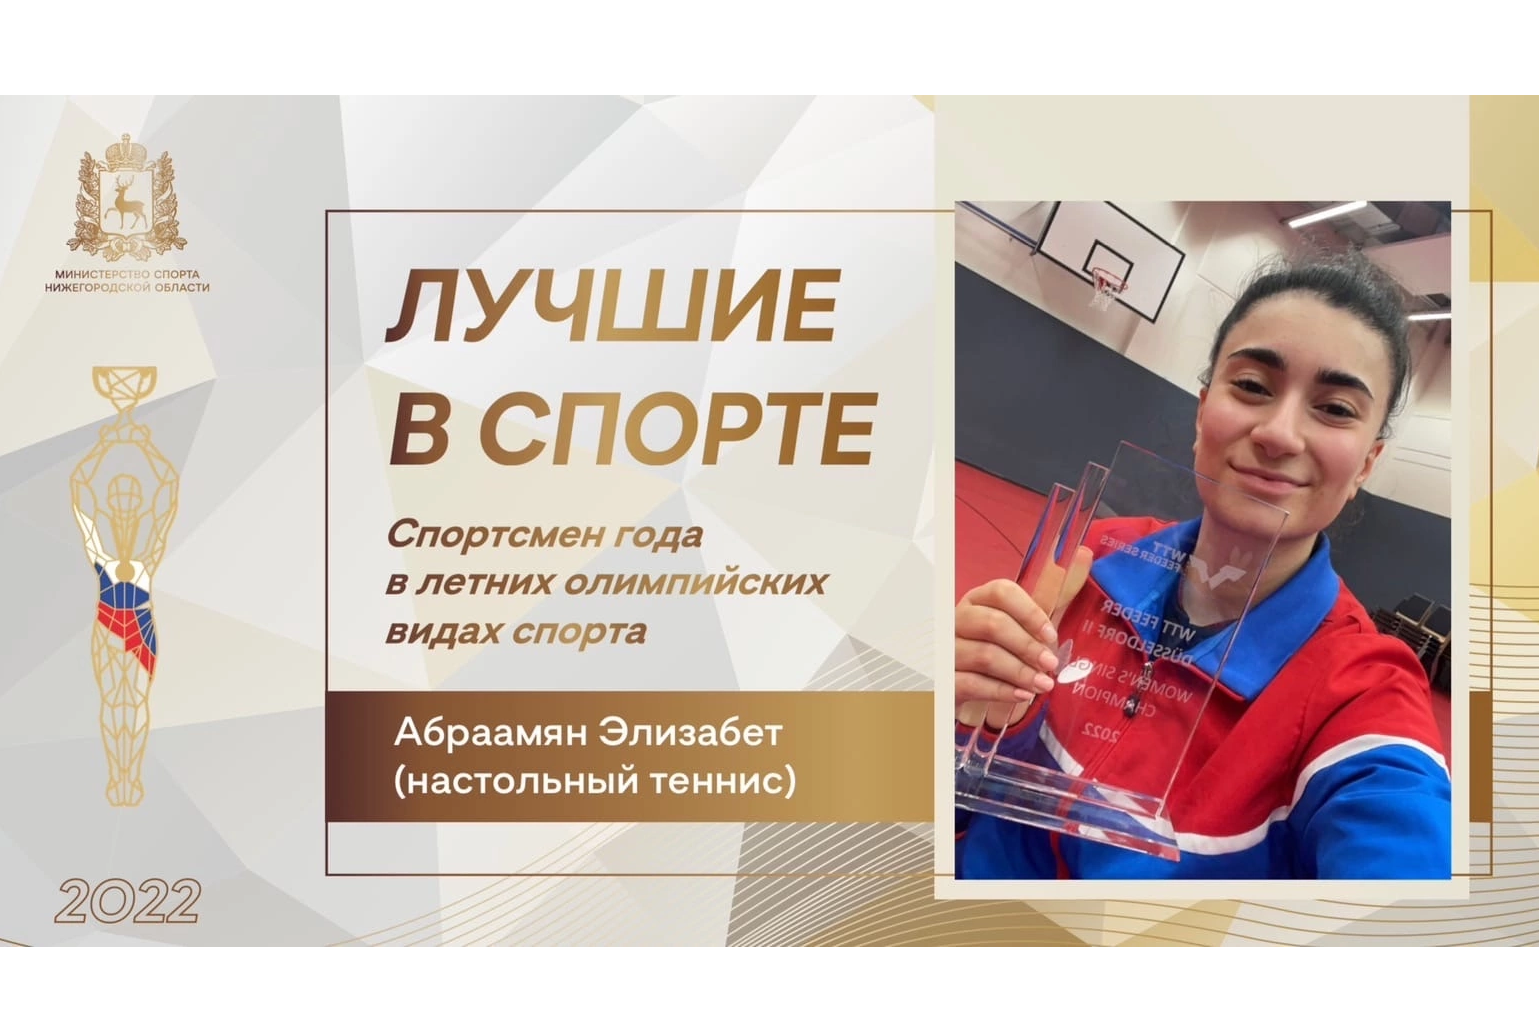 Студентка Мининского стала победителем региональной премии Лучшие в спорте-2022 